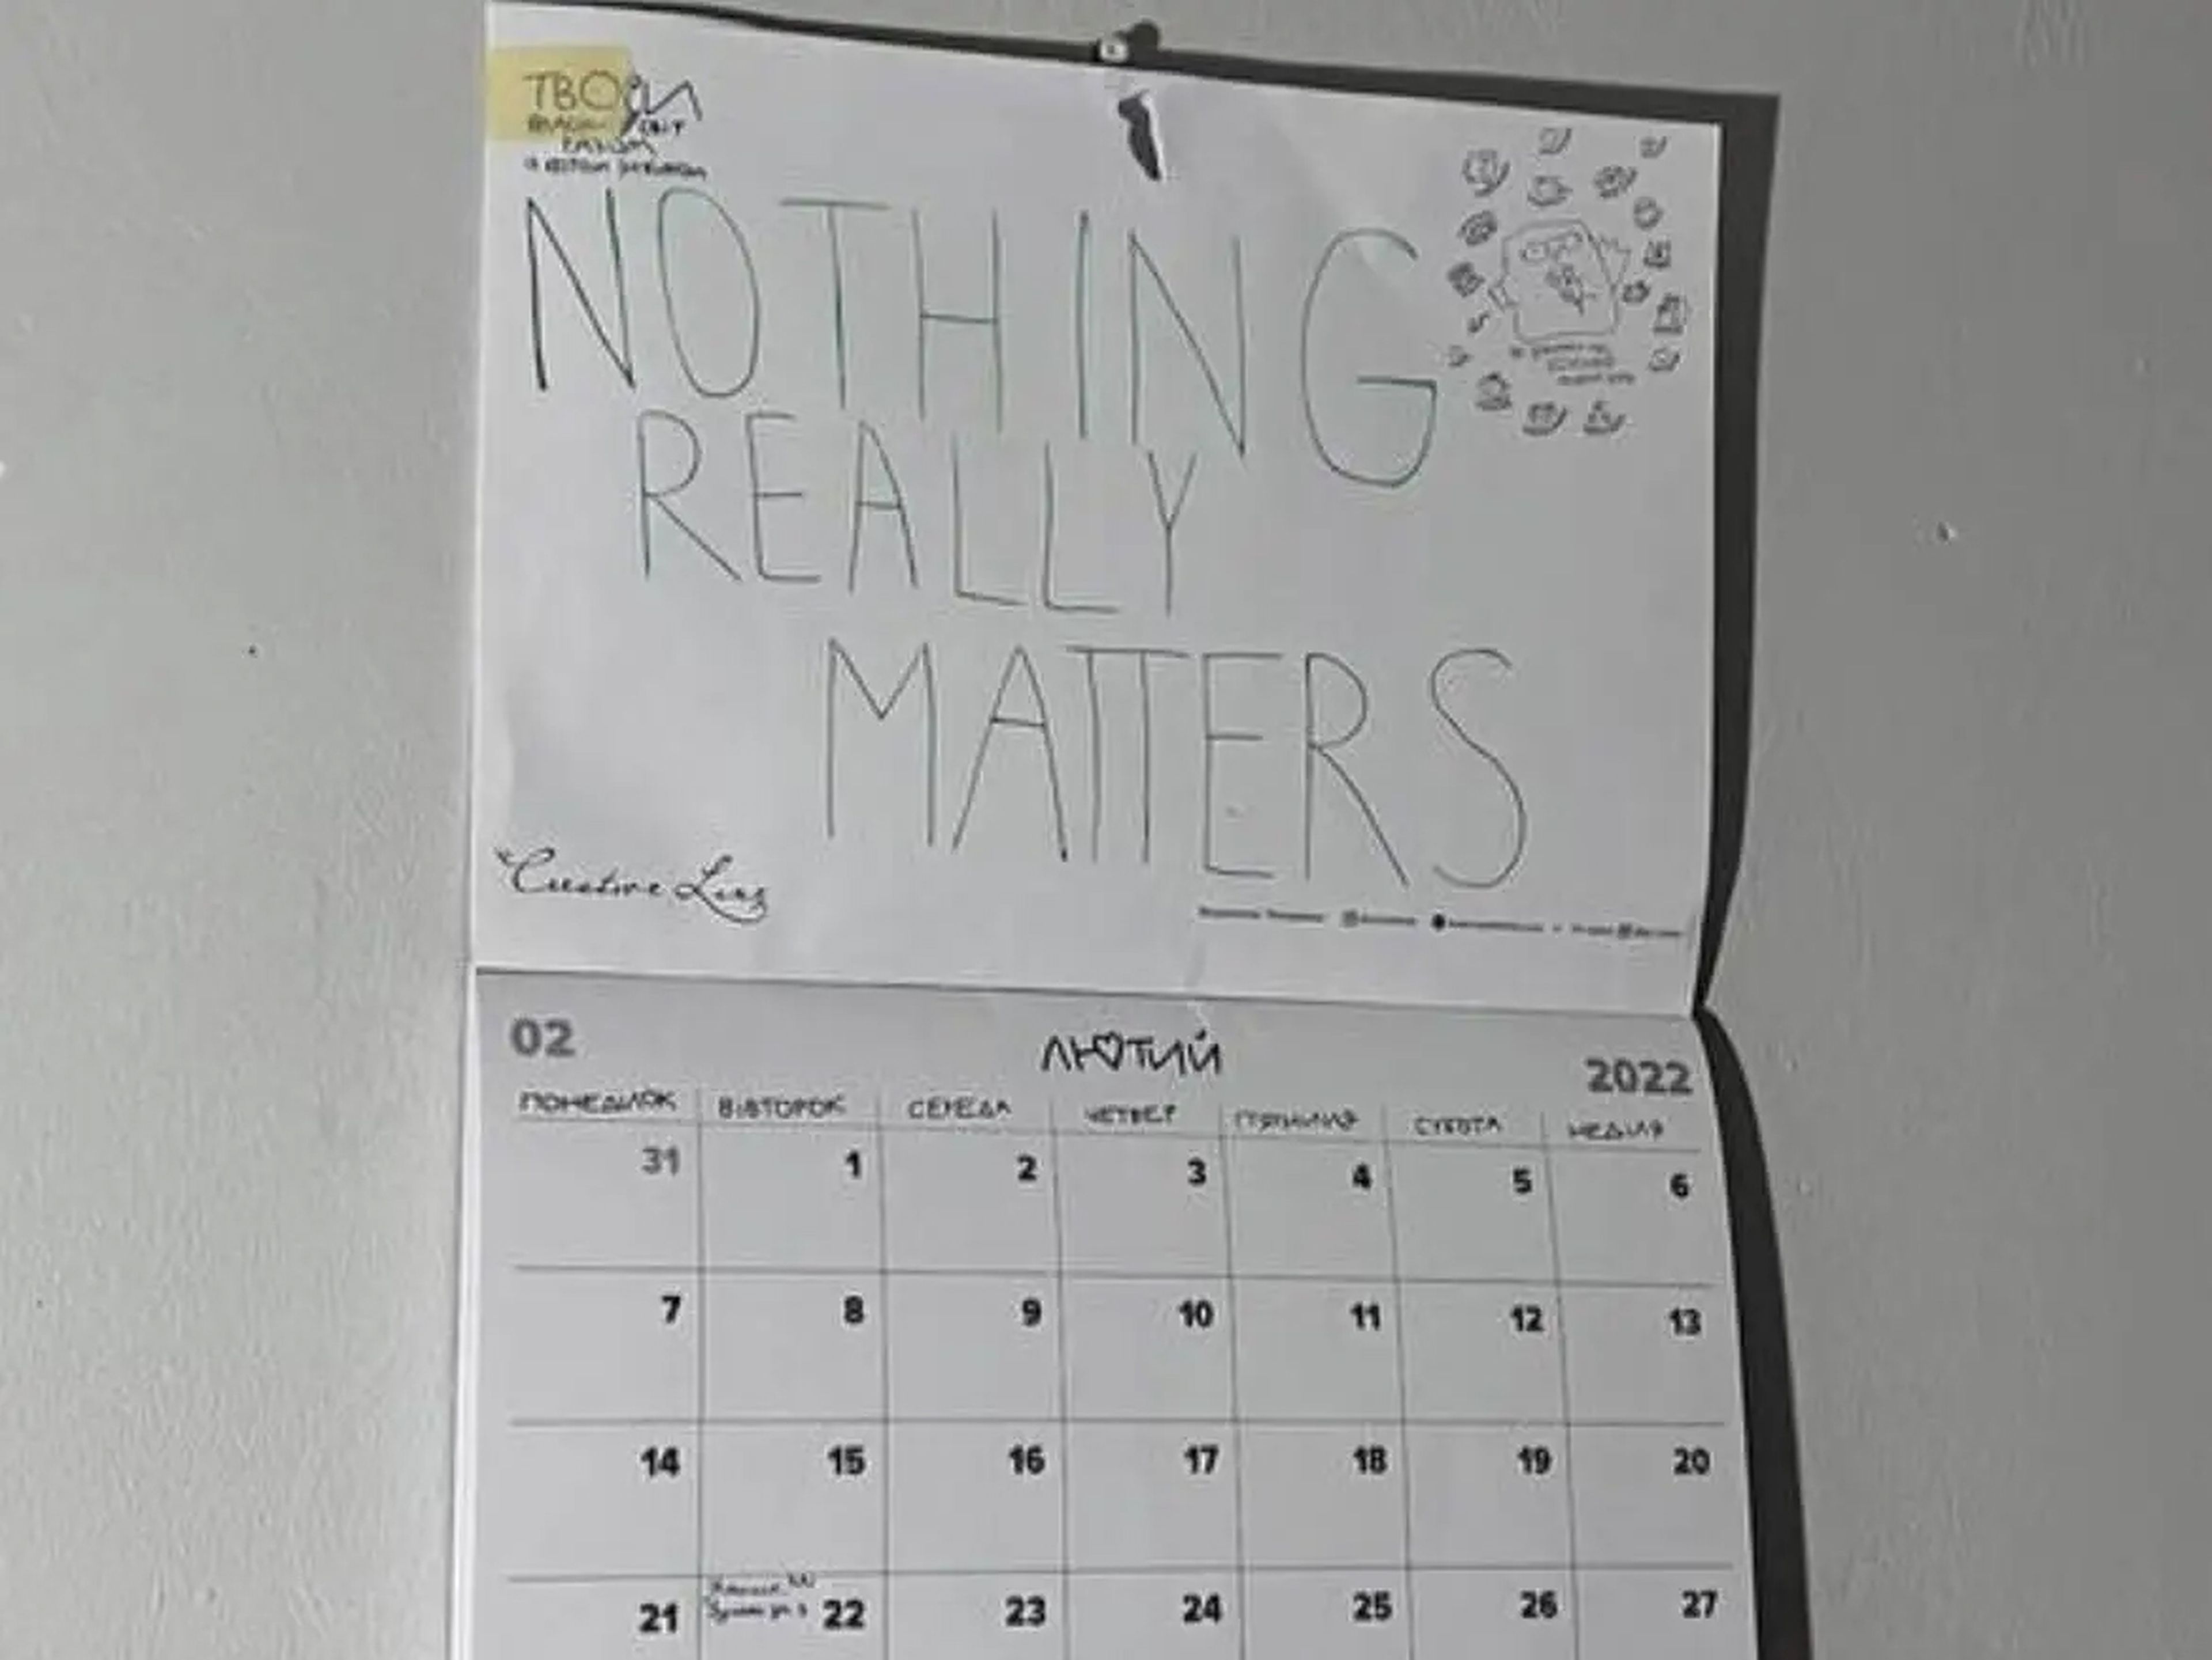 Sofía escribió en su agenda "nada importa realmente" después de un mal día el 23 de febrero. Ahora reconoce que no podía estar más equivocada.